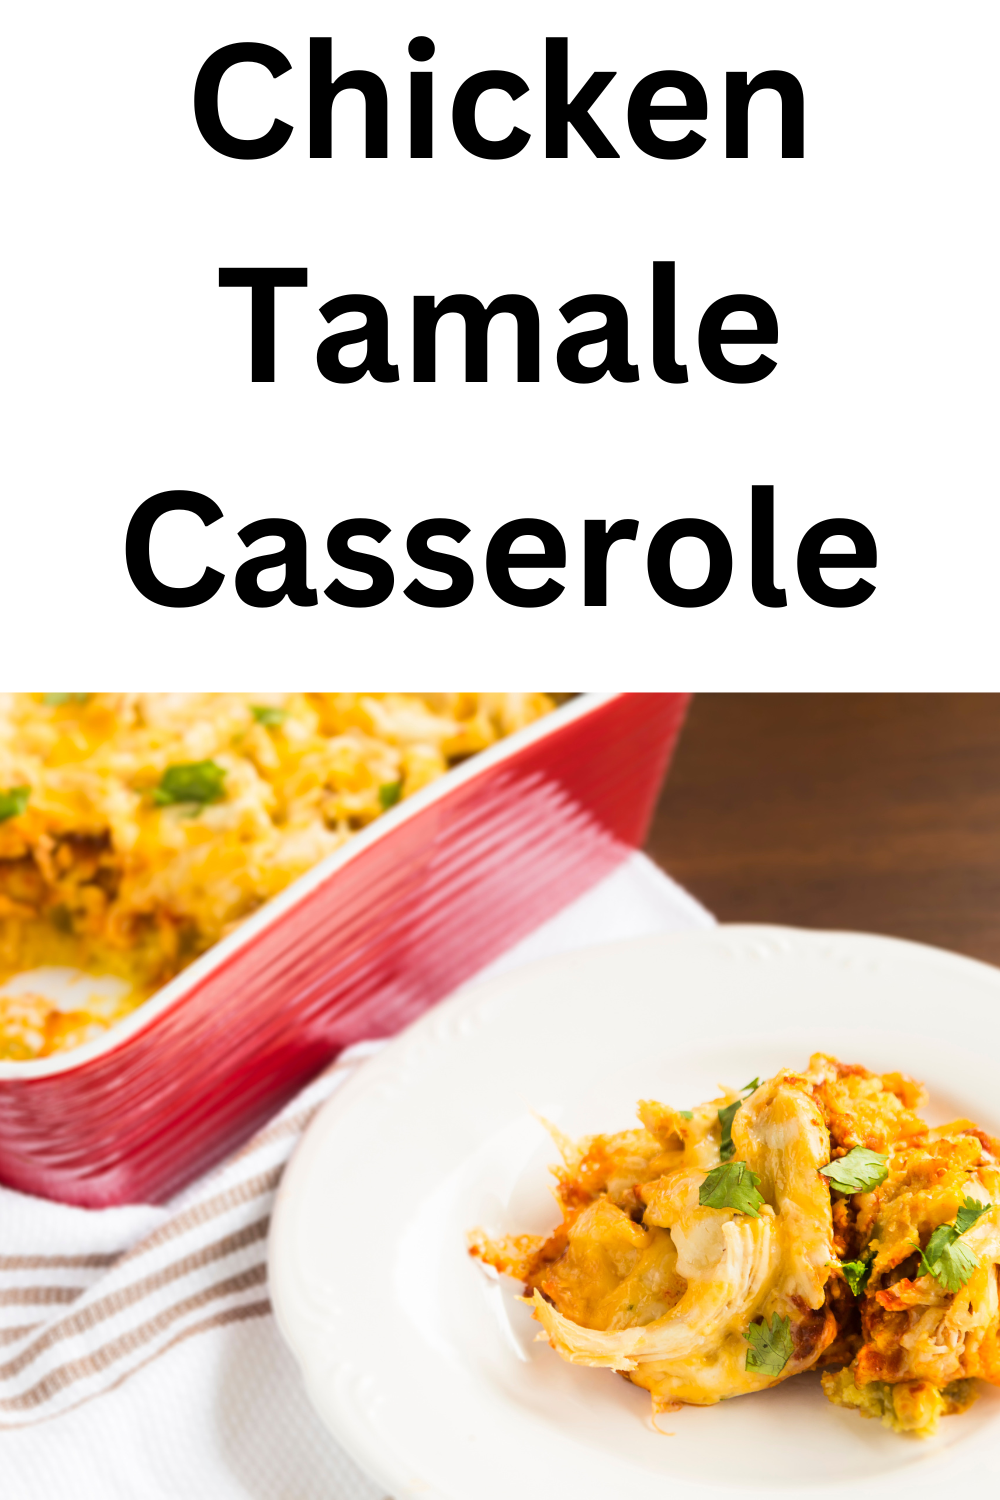 Chicken Tamale Casserole